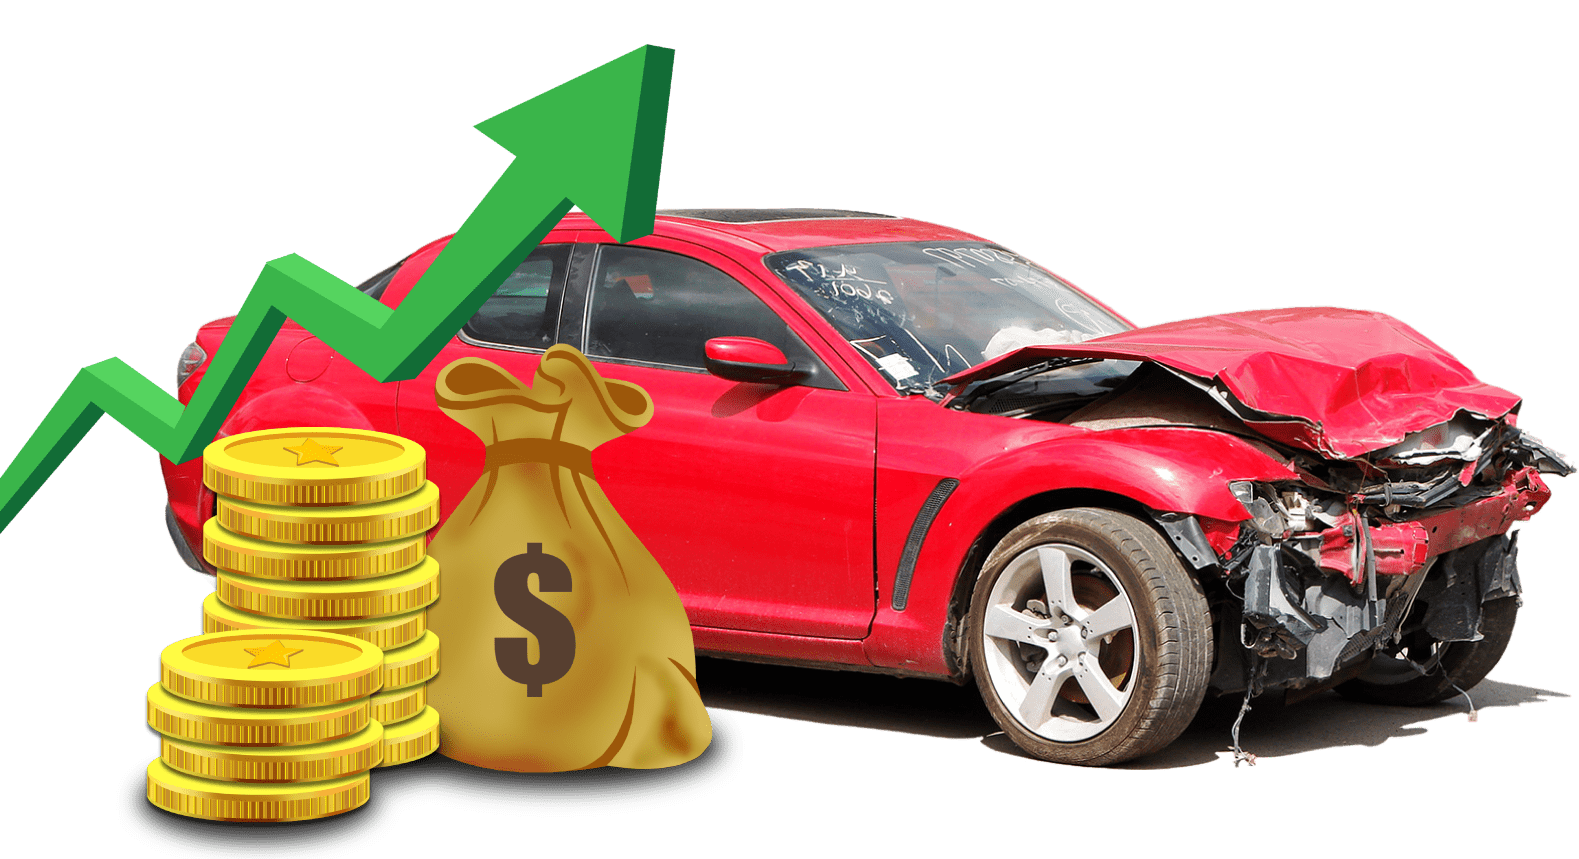  Cash For Cars Arundel  